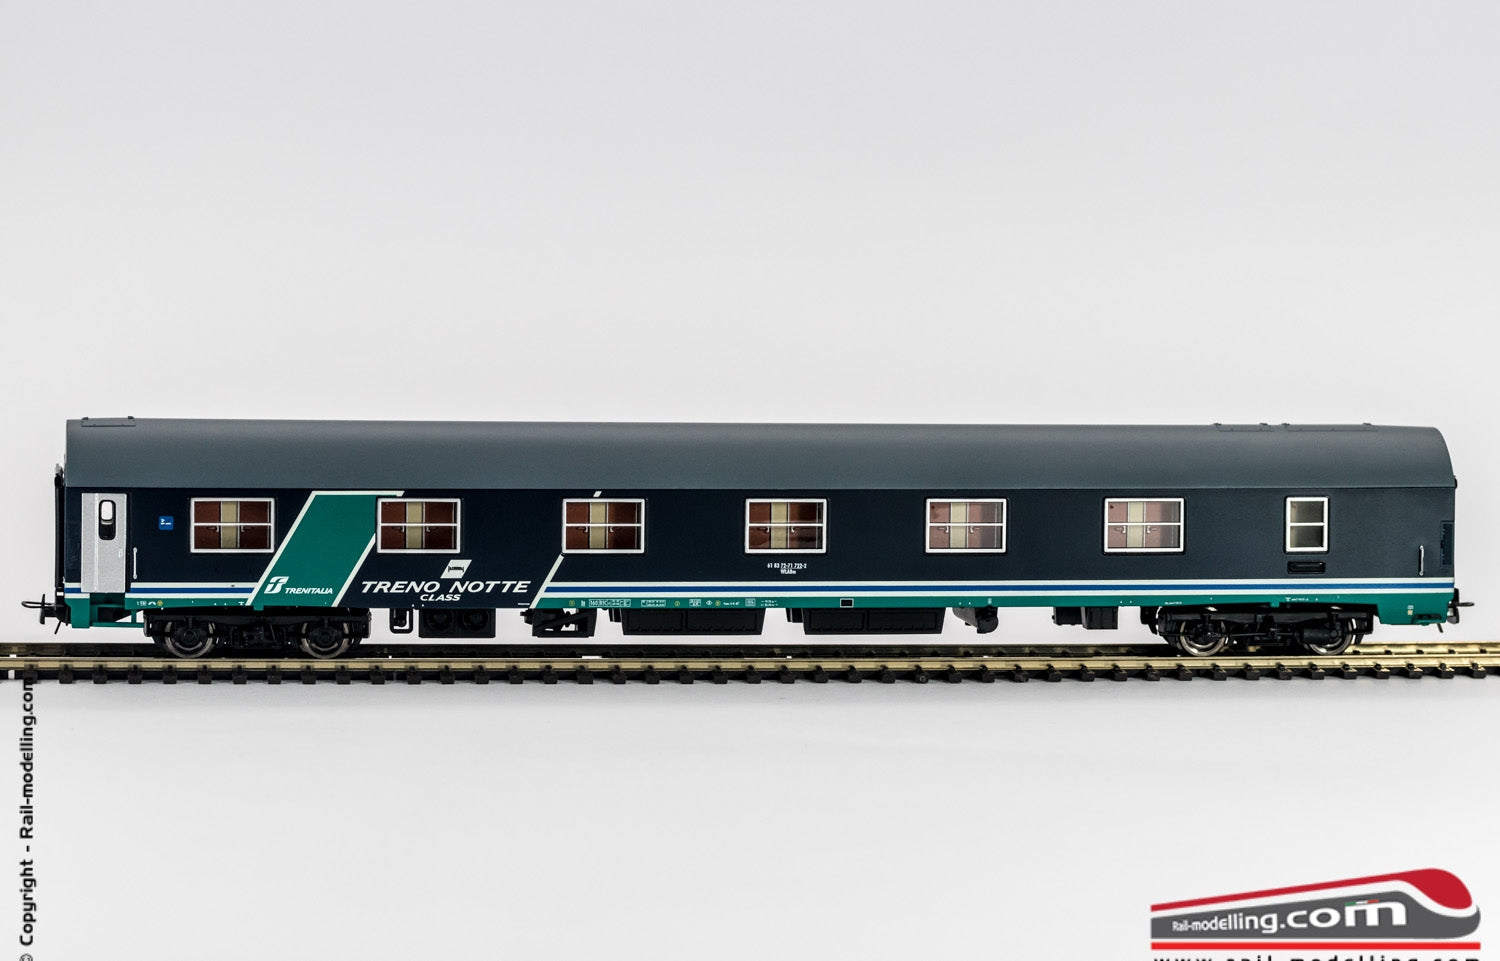 RIVAROSSI HR4242 - H0 1:87 - Carrozza vagone letto FS modelloMU 1973 class Treno Notte livrea XMPR ep.Vb